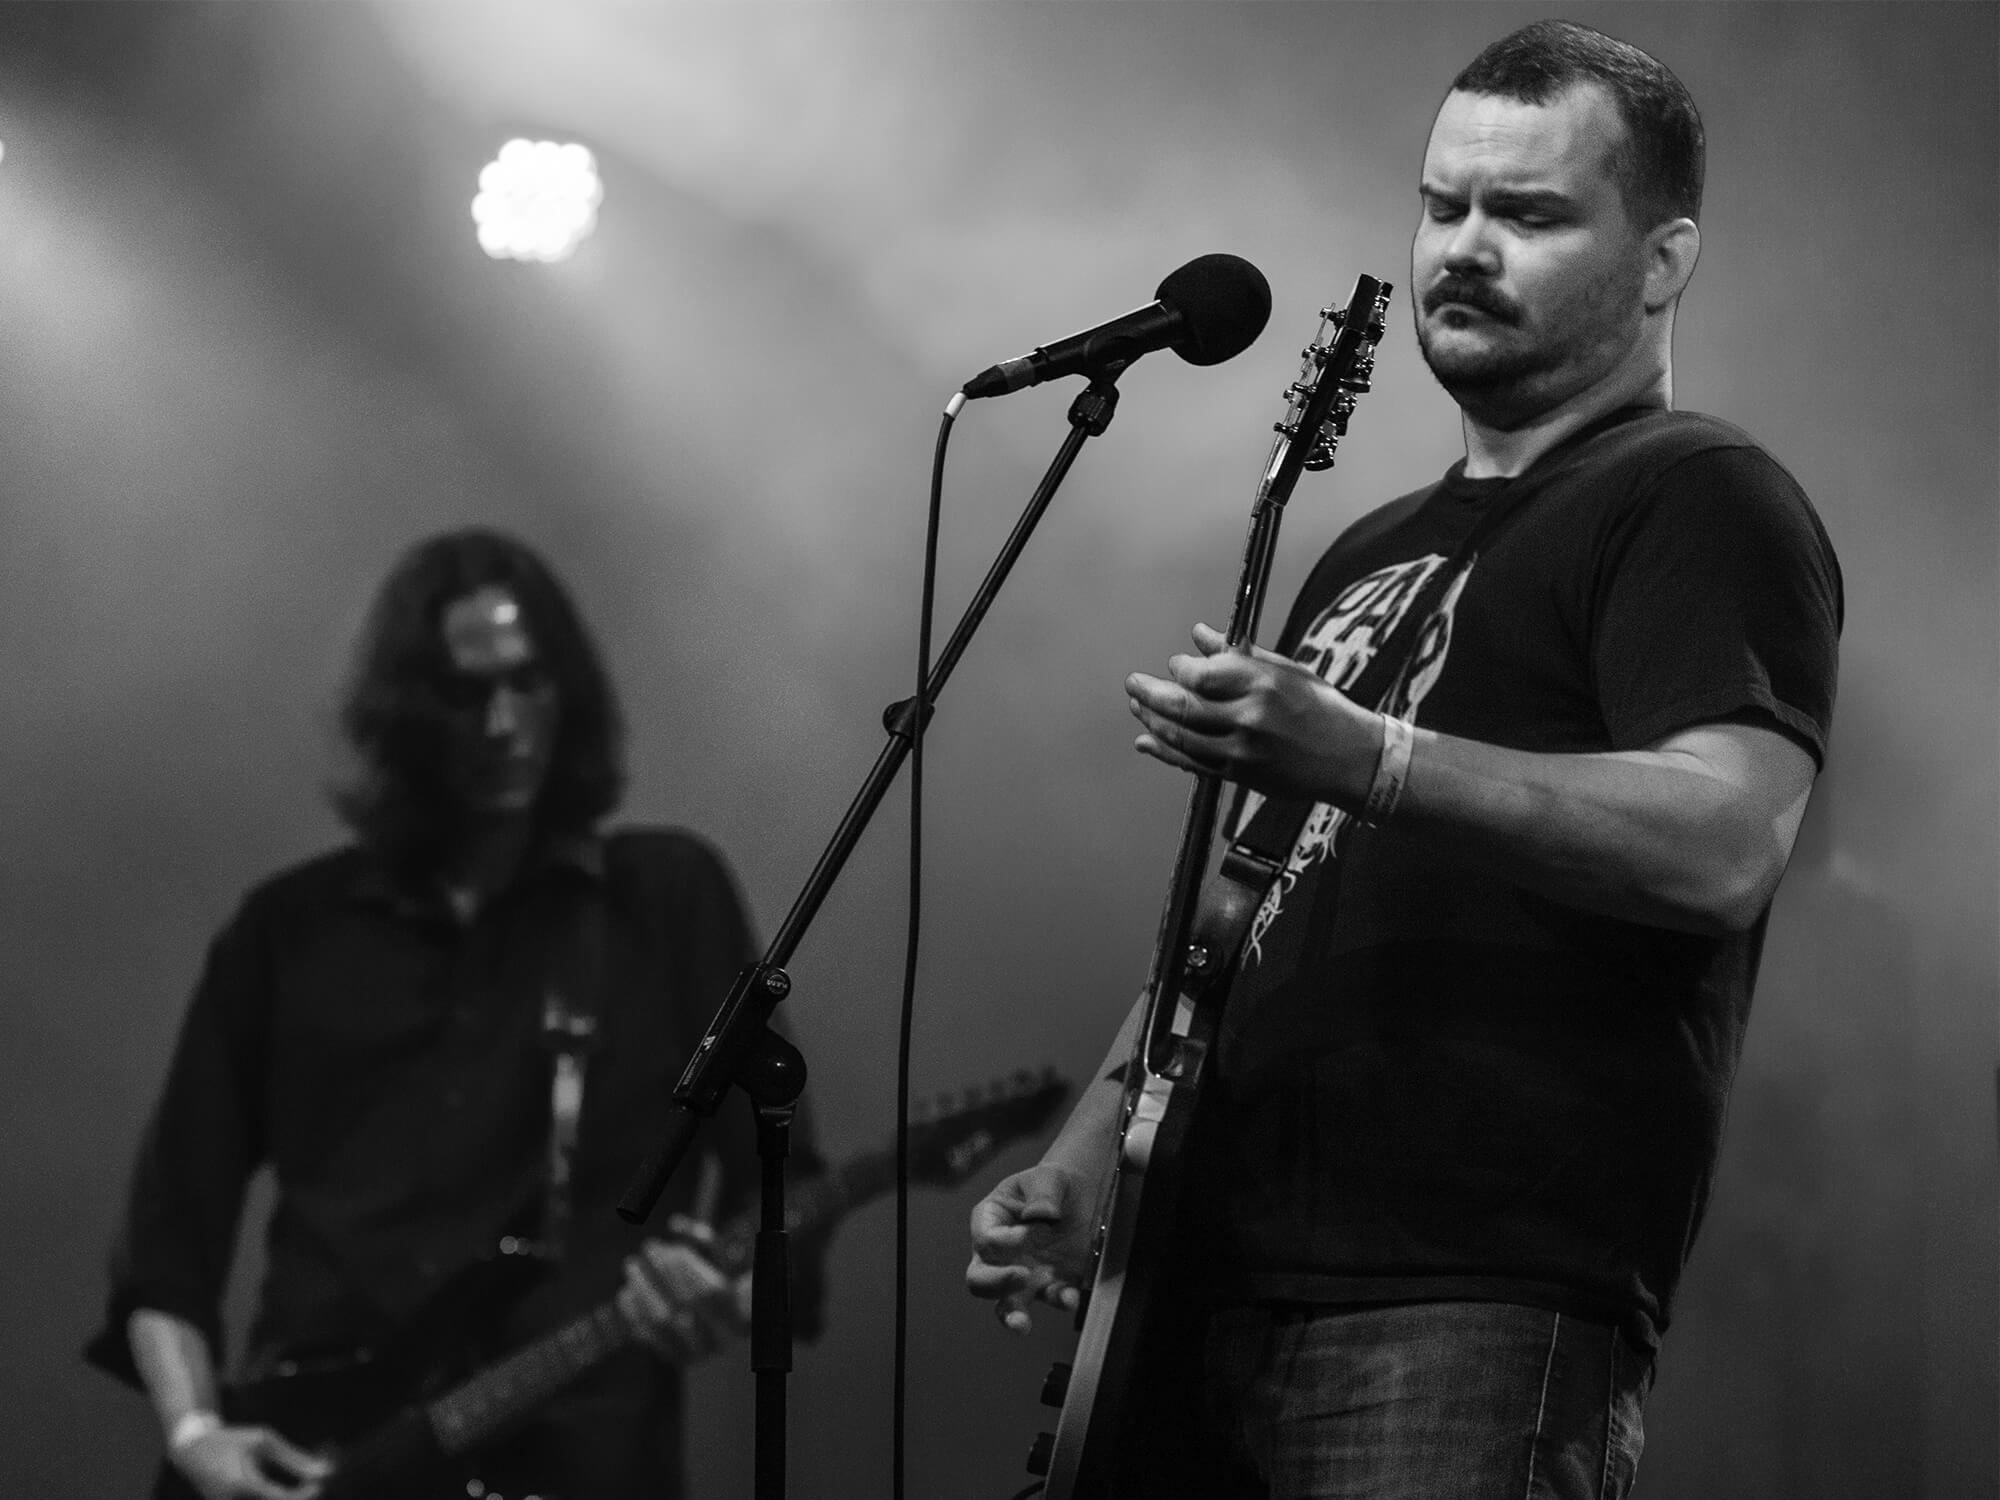 Floor at Roadburn Festival in 2015